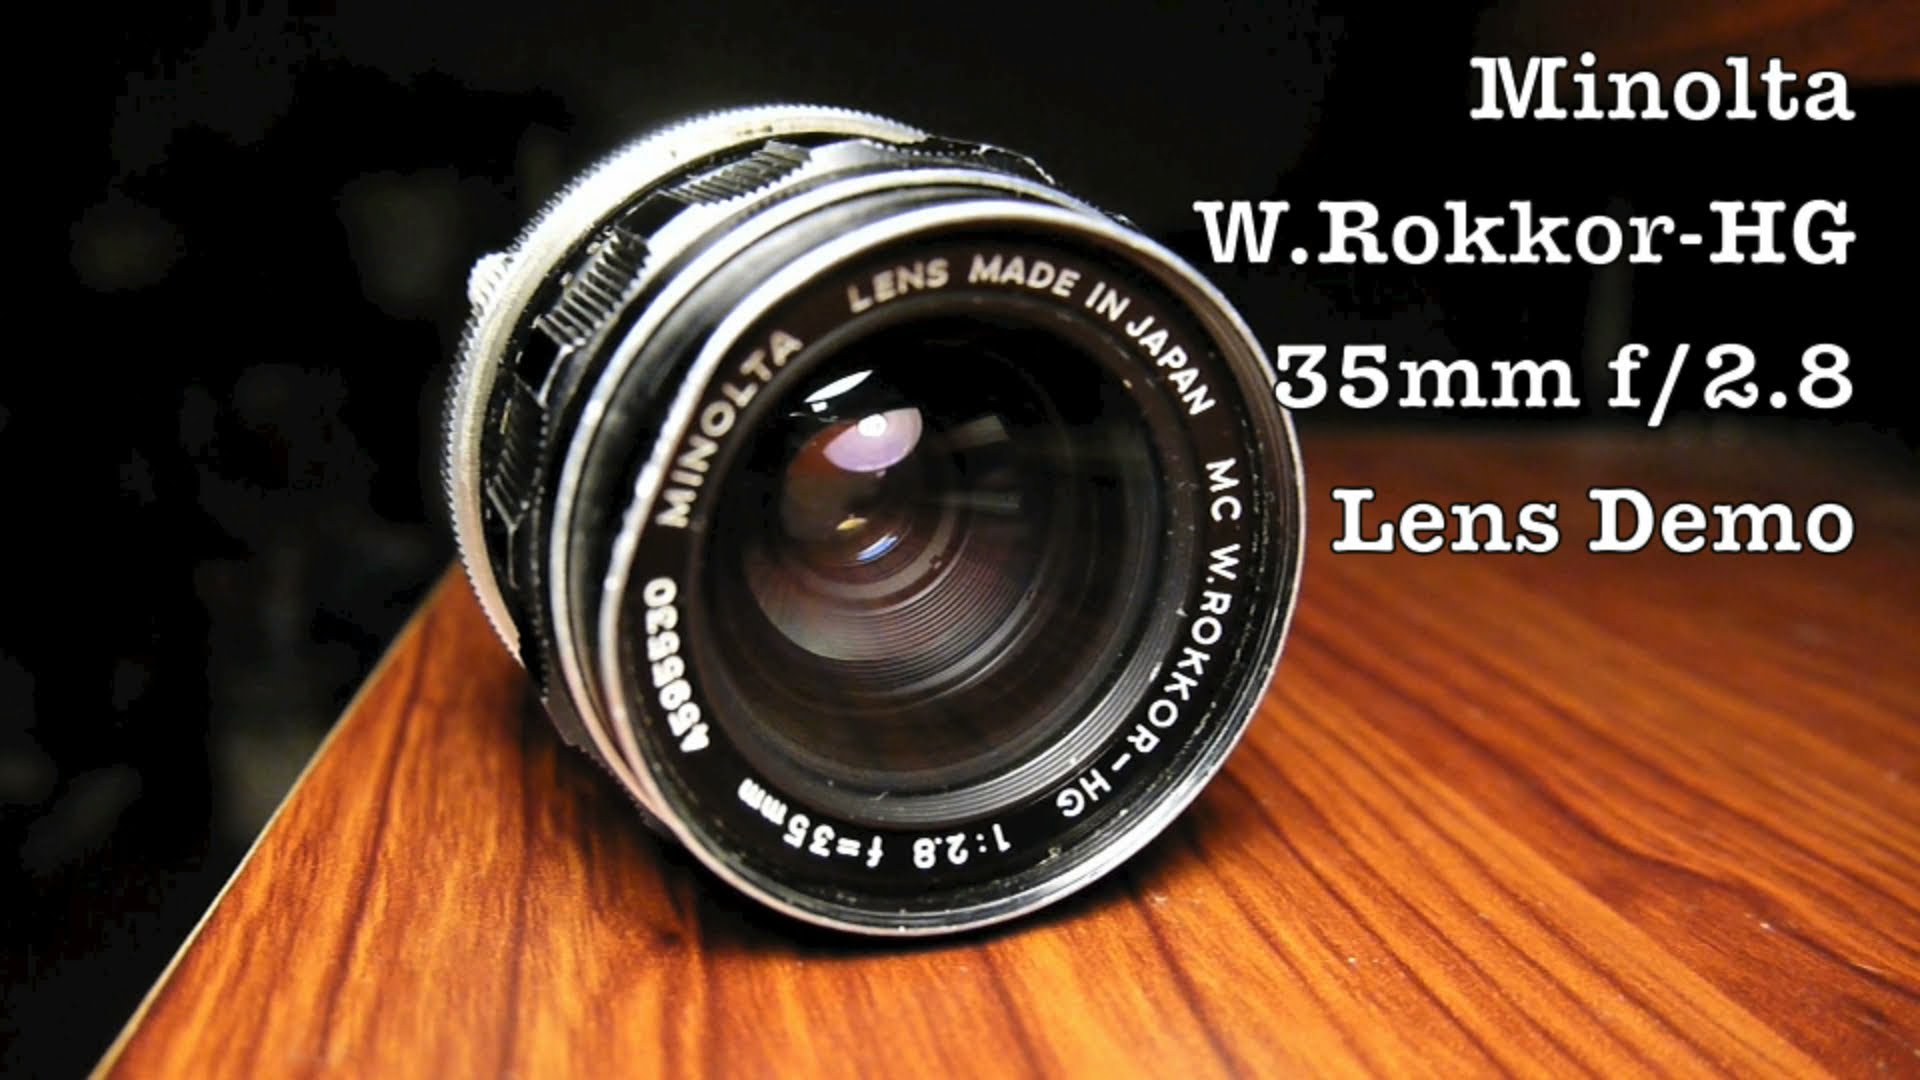 Minolta Rokkor 35mm f/2.8 Lens For MD Mount Film SLR Cameras & New DSLR Camera Systems w/ Adapter